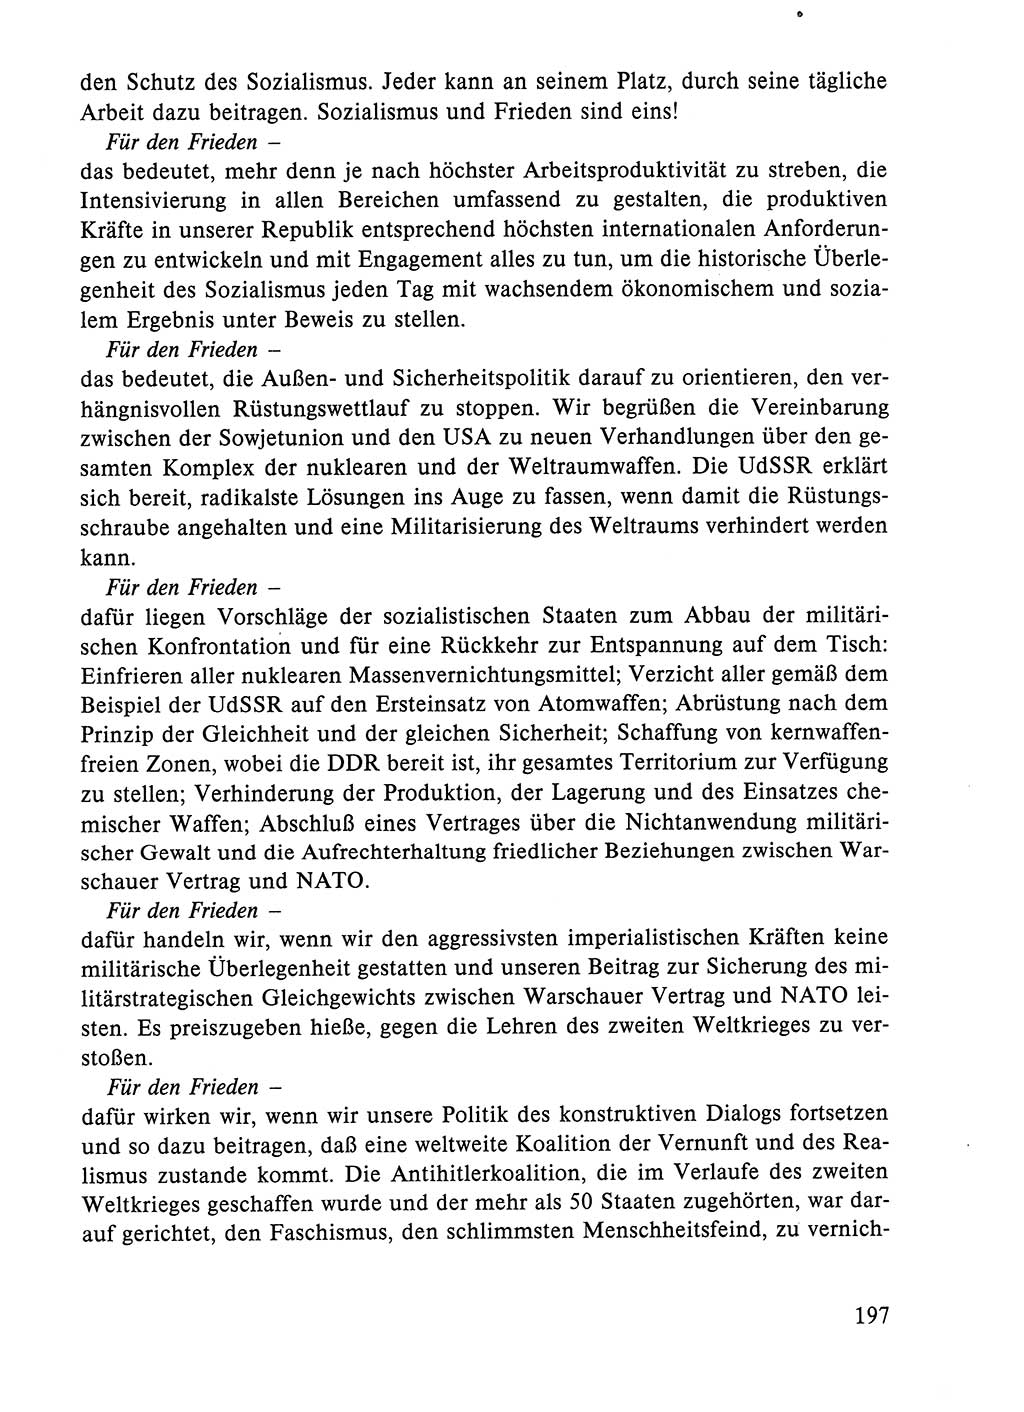 Dokumente der Sozialistischen Einheitspartei Deutschlands (SED) [Deutsche Demokratische Republik (DDR)] 1984-1985, Seite 230 (Dok. SED DDR 1984-1985, S. 230)